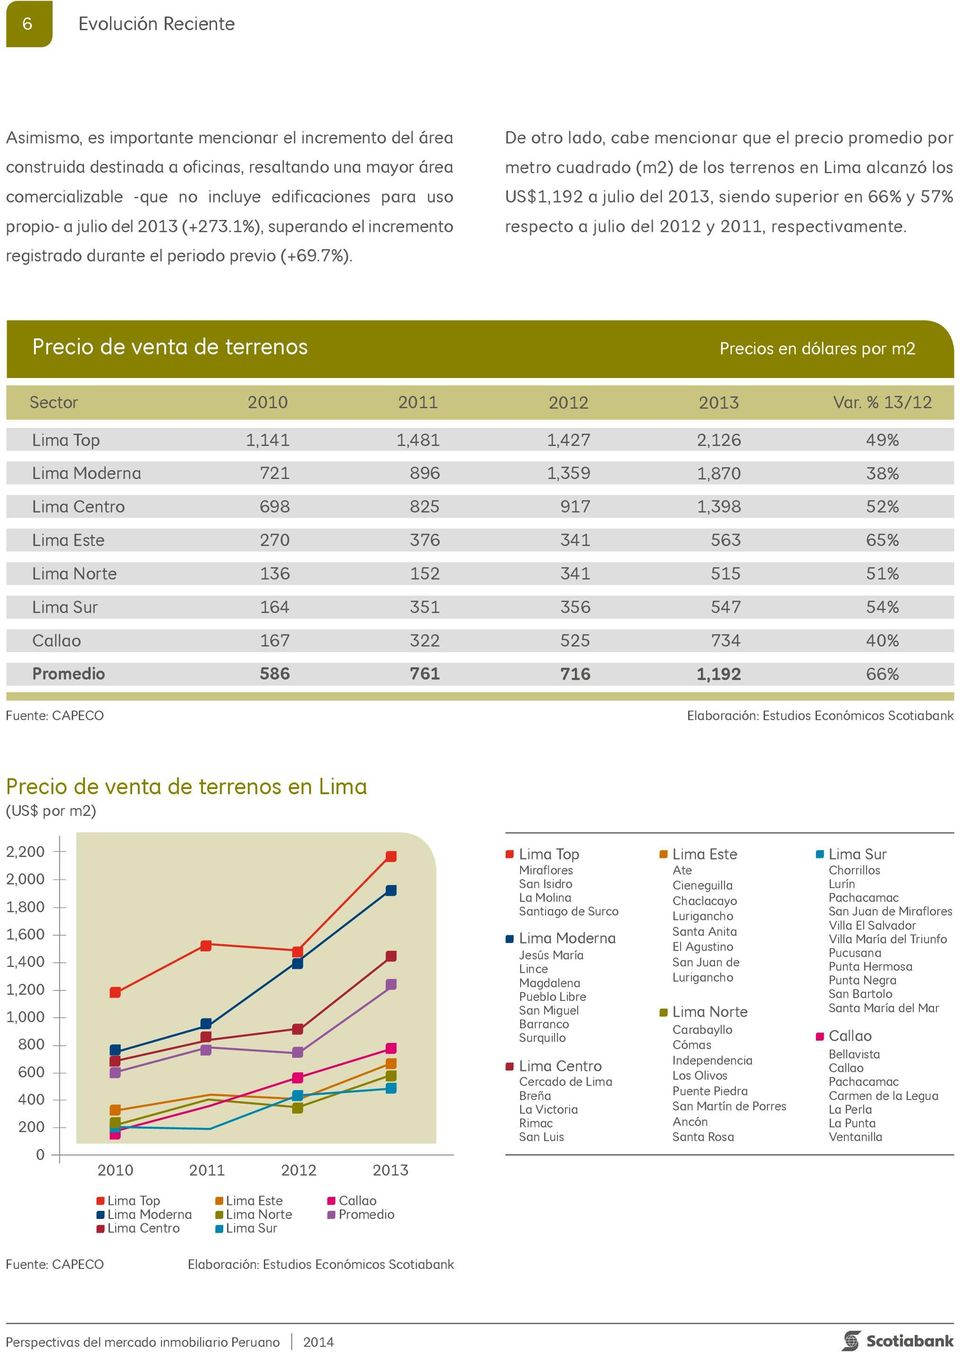 De otro lado, cabe mencionar que el precio promedio por metro cuadrado (m2) de los terrenos en Lima alcanzó los US$1,192 a julio del 2013, siendo superior en 66% y 57% respecto a julio del 2012 y